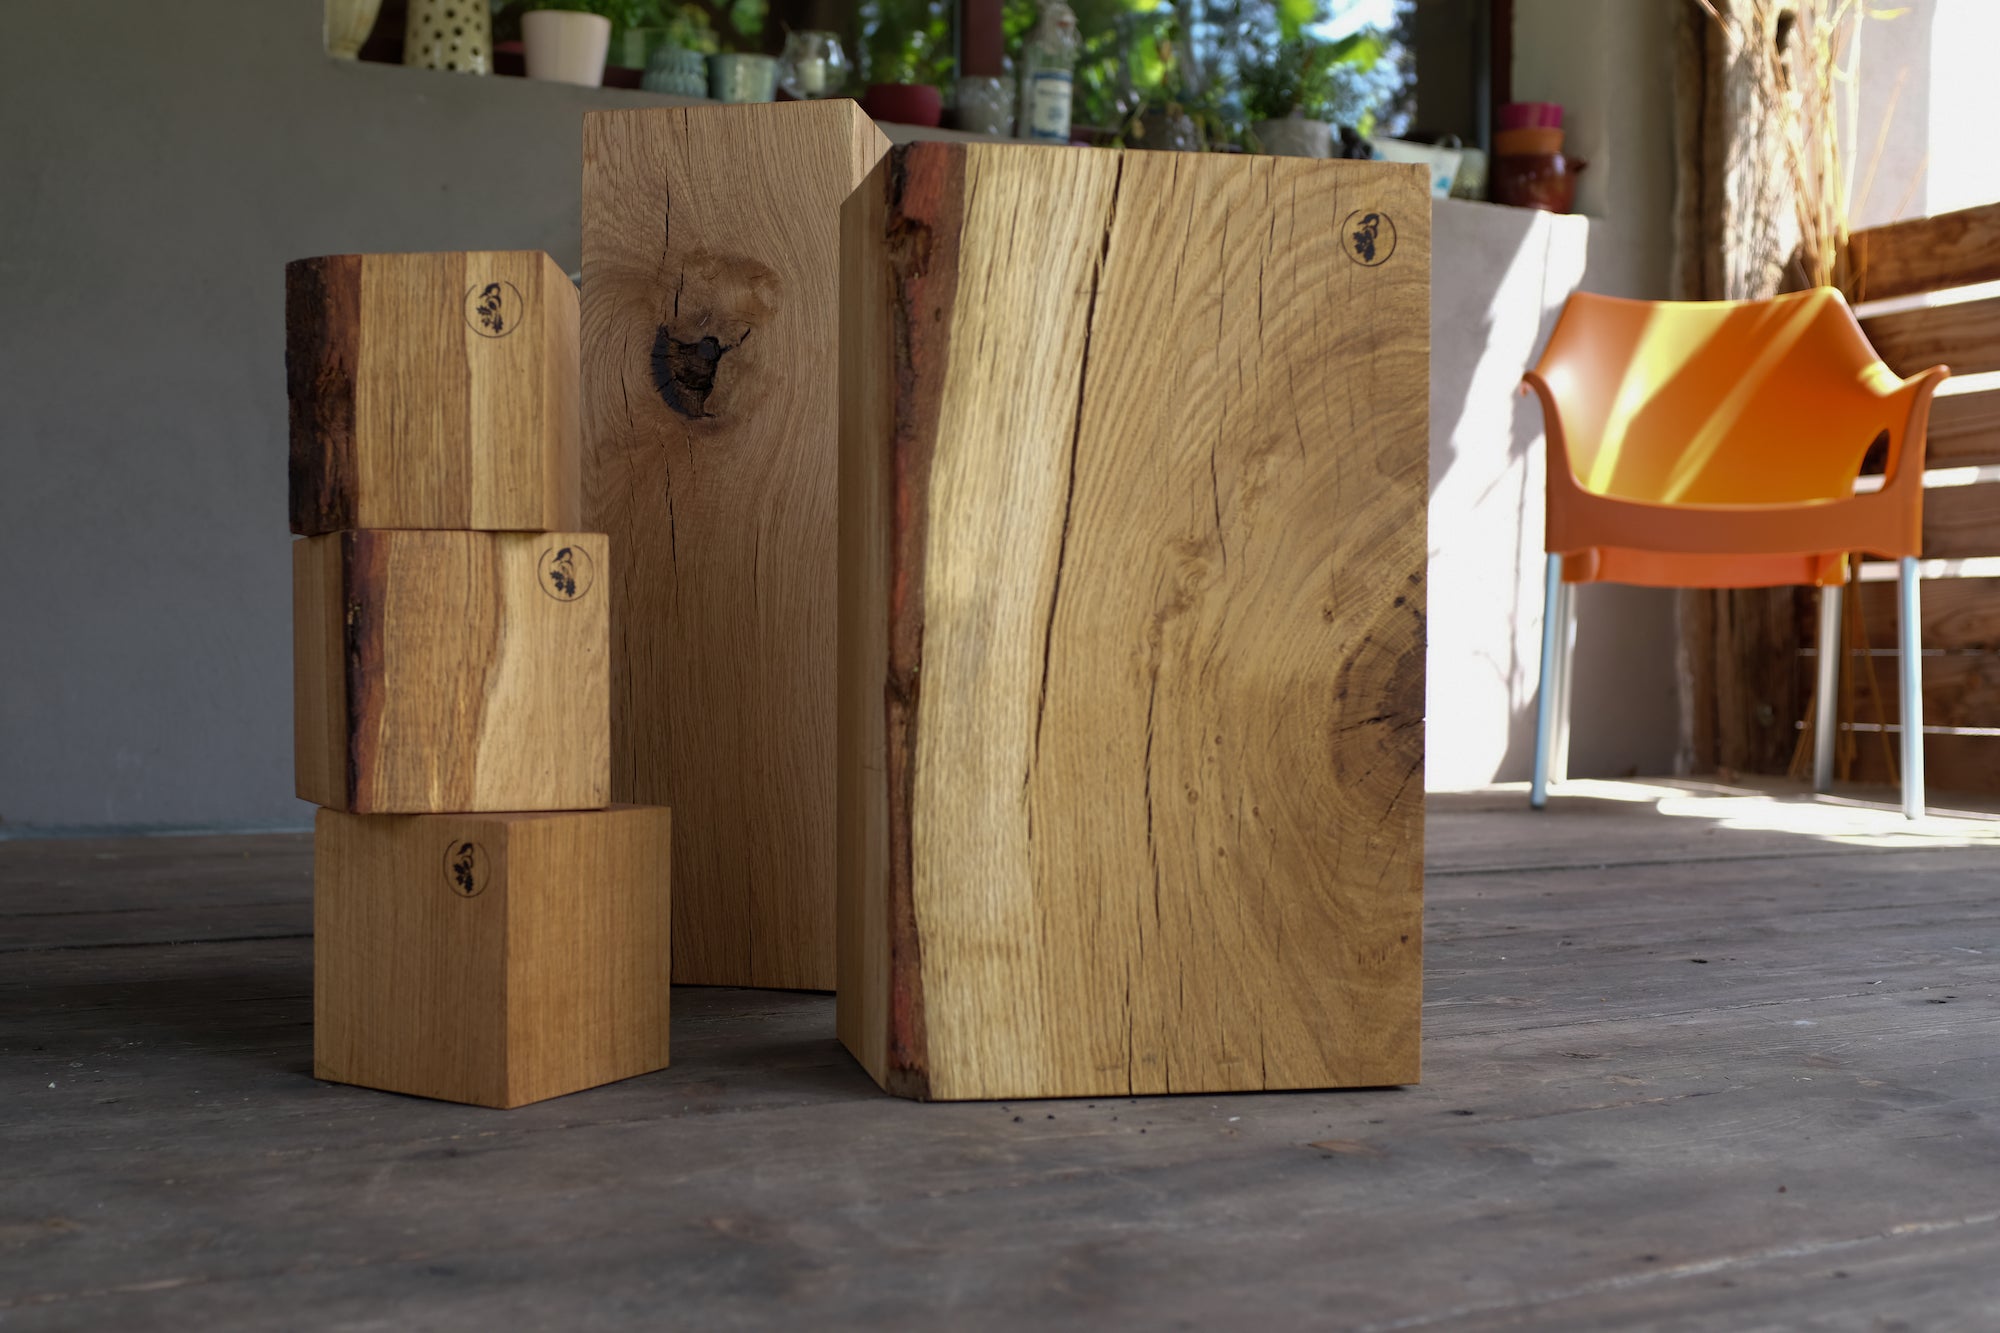 Holzklötze aus Eiche in drei verschiedenen Größen. Teilweise mit Baumkante. Fotografiert auf einem Holz Terassenboden.